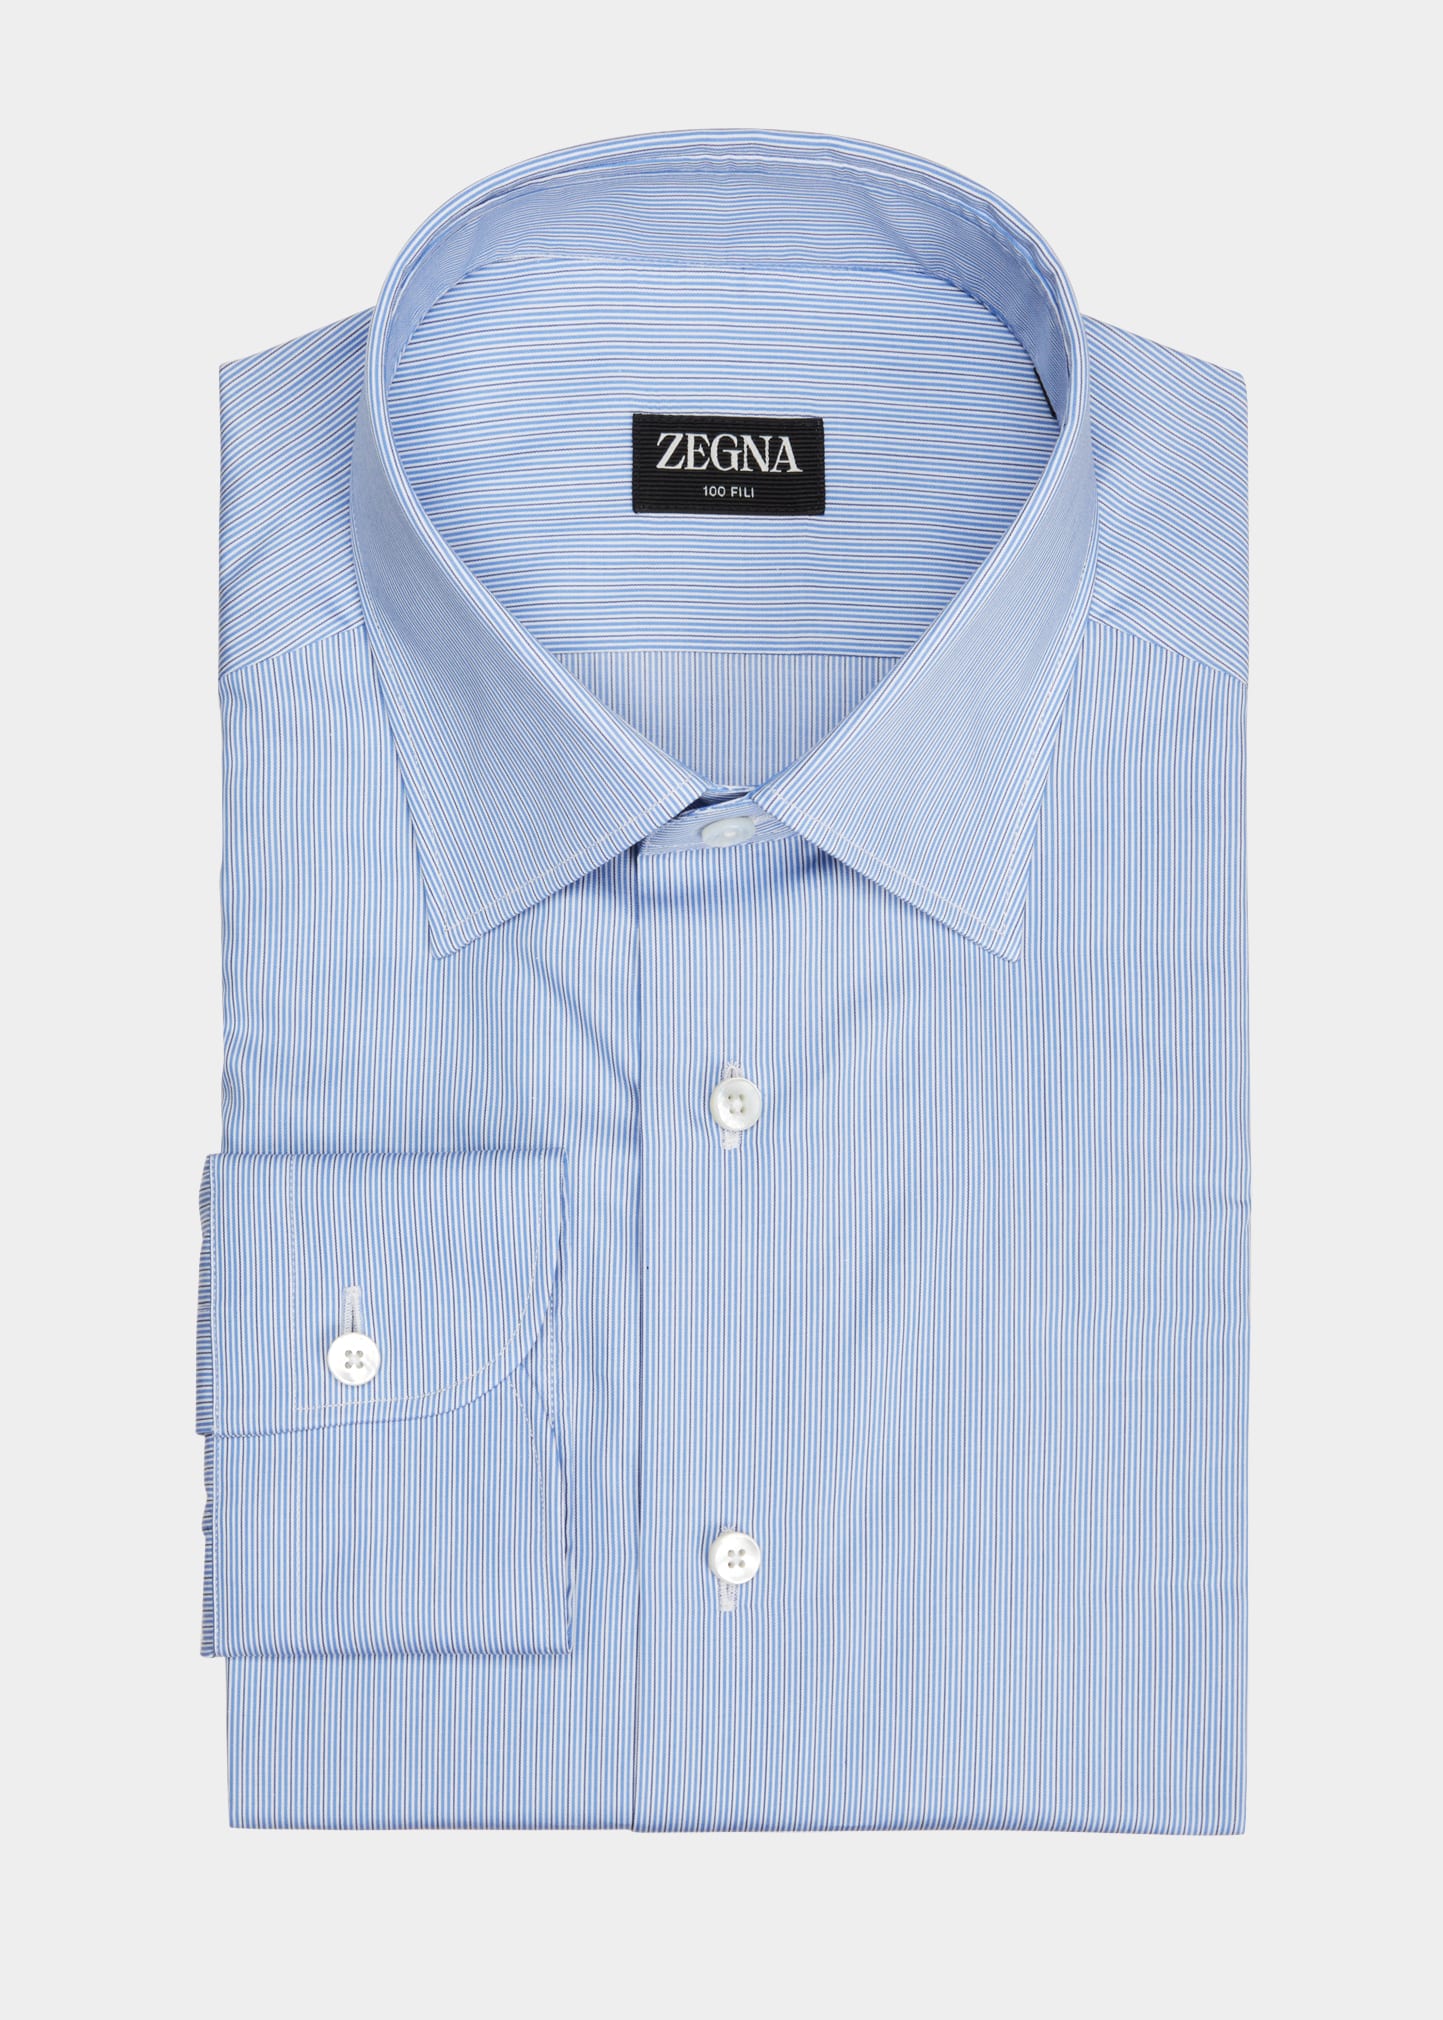 ZEGNA Men's Micro-Stripe 100Fili Dress Shirt